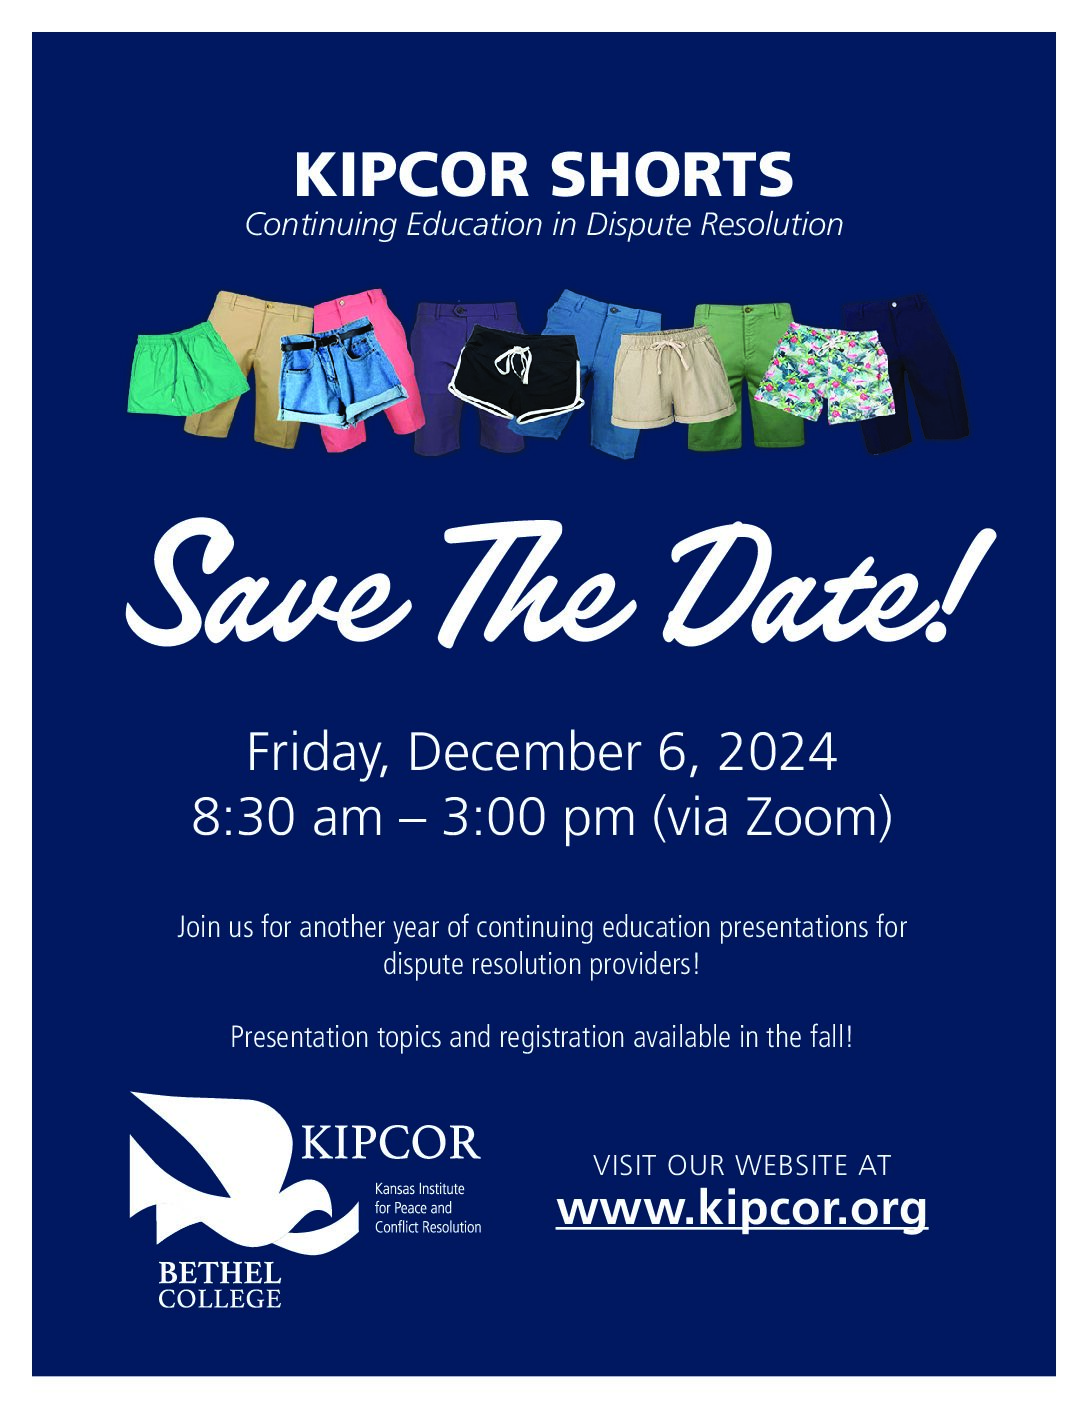 KIPCOR Shorts